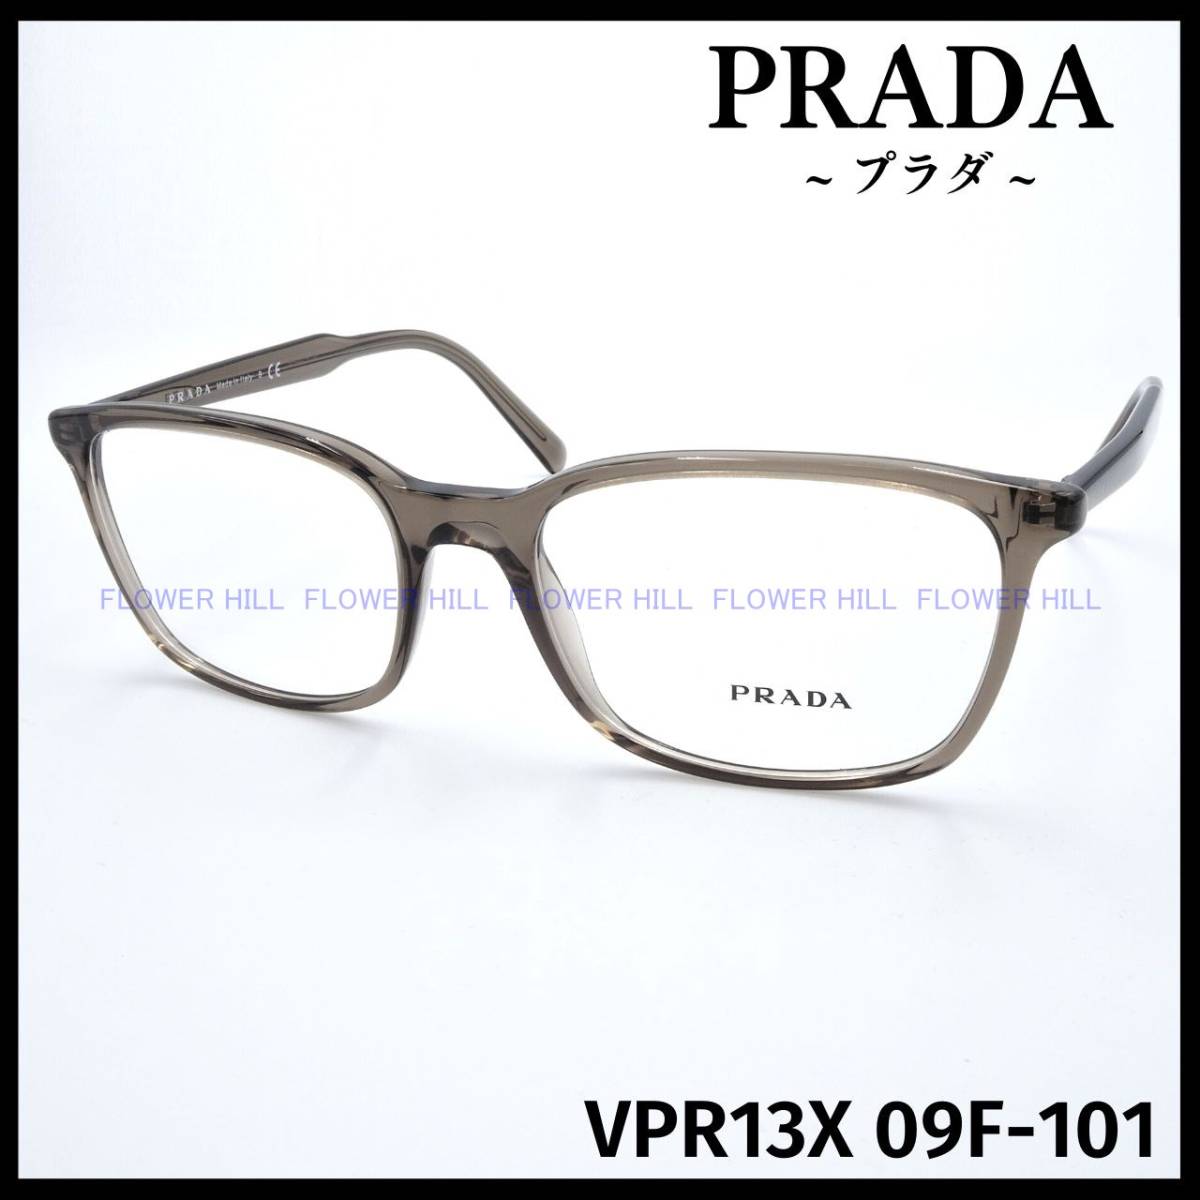 【新品・送料無料】プラダ PRADA VPR13X 09F-1O1 メガネ セルフレーム ウェリントン ライトブラウン メンズ レディース